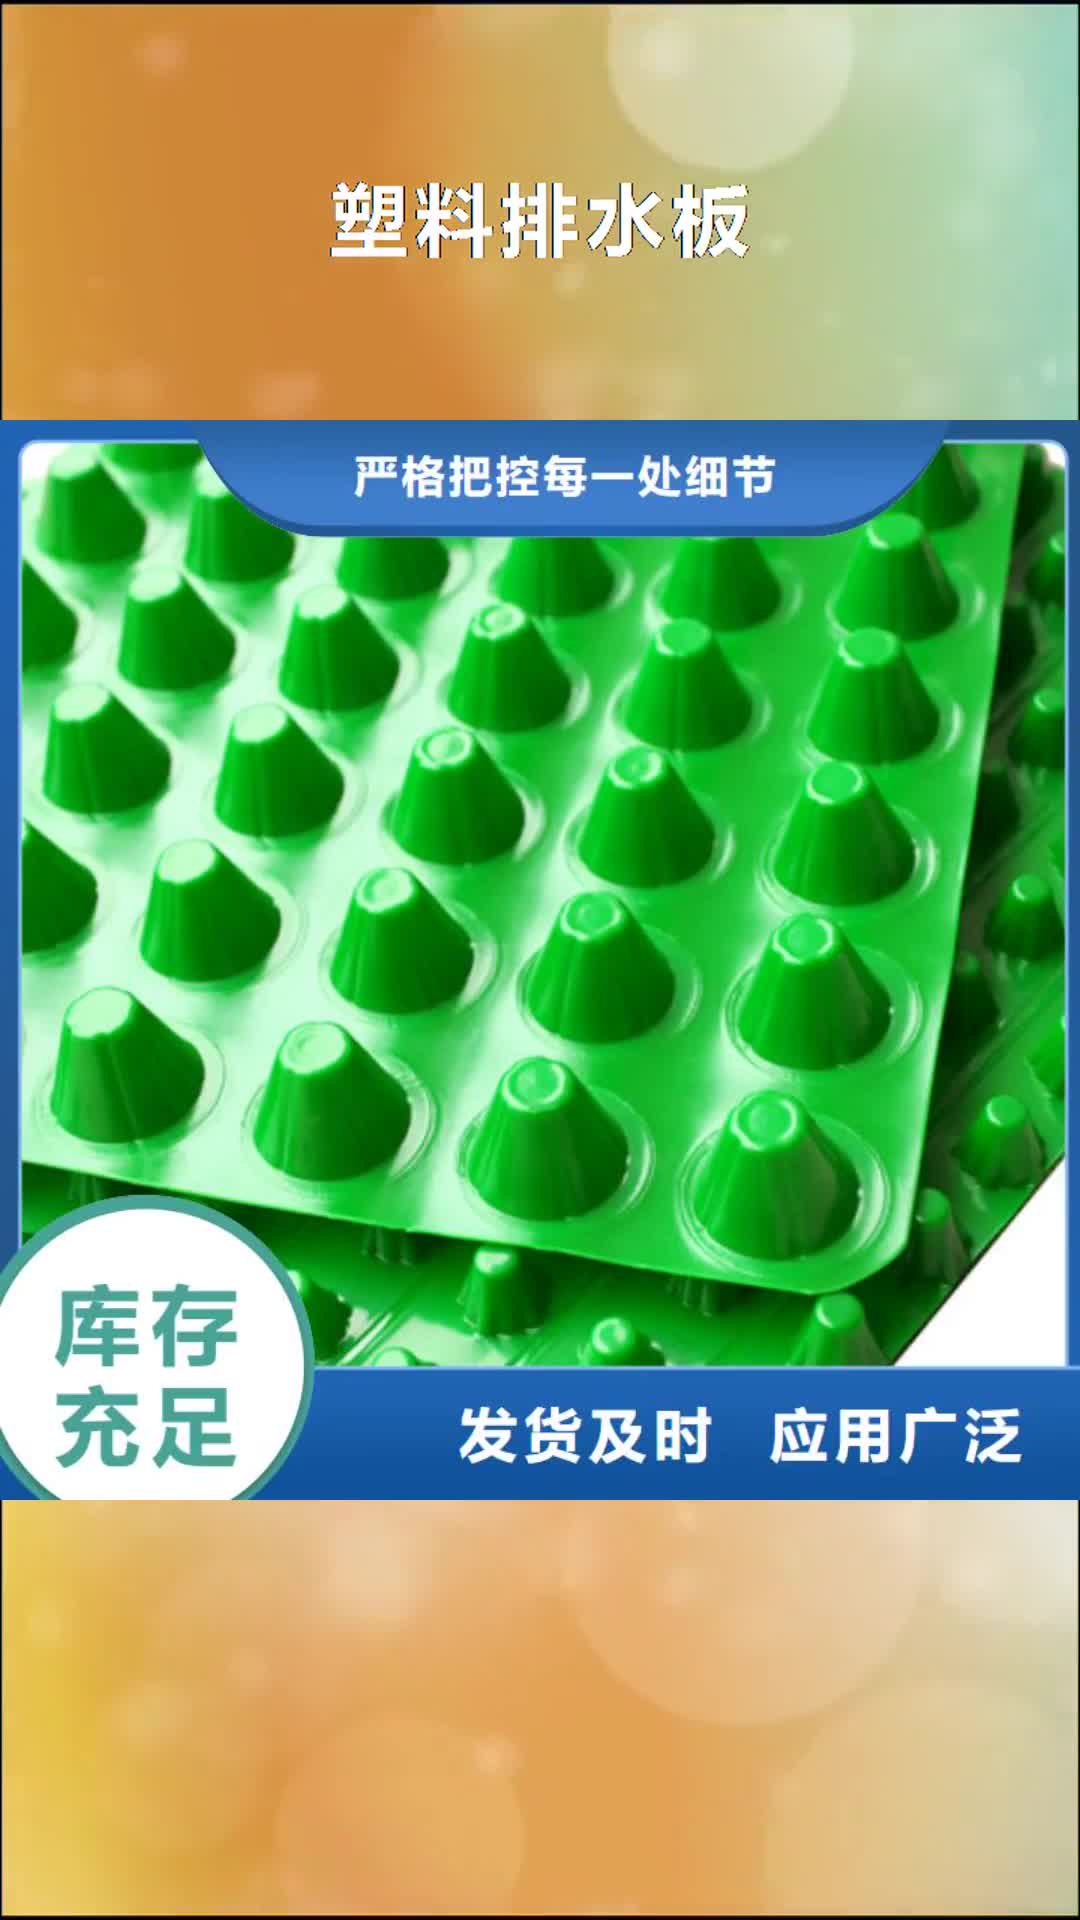 【南平 塑料排水板 排水板品质优良】